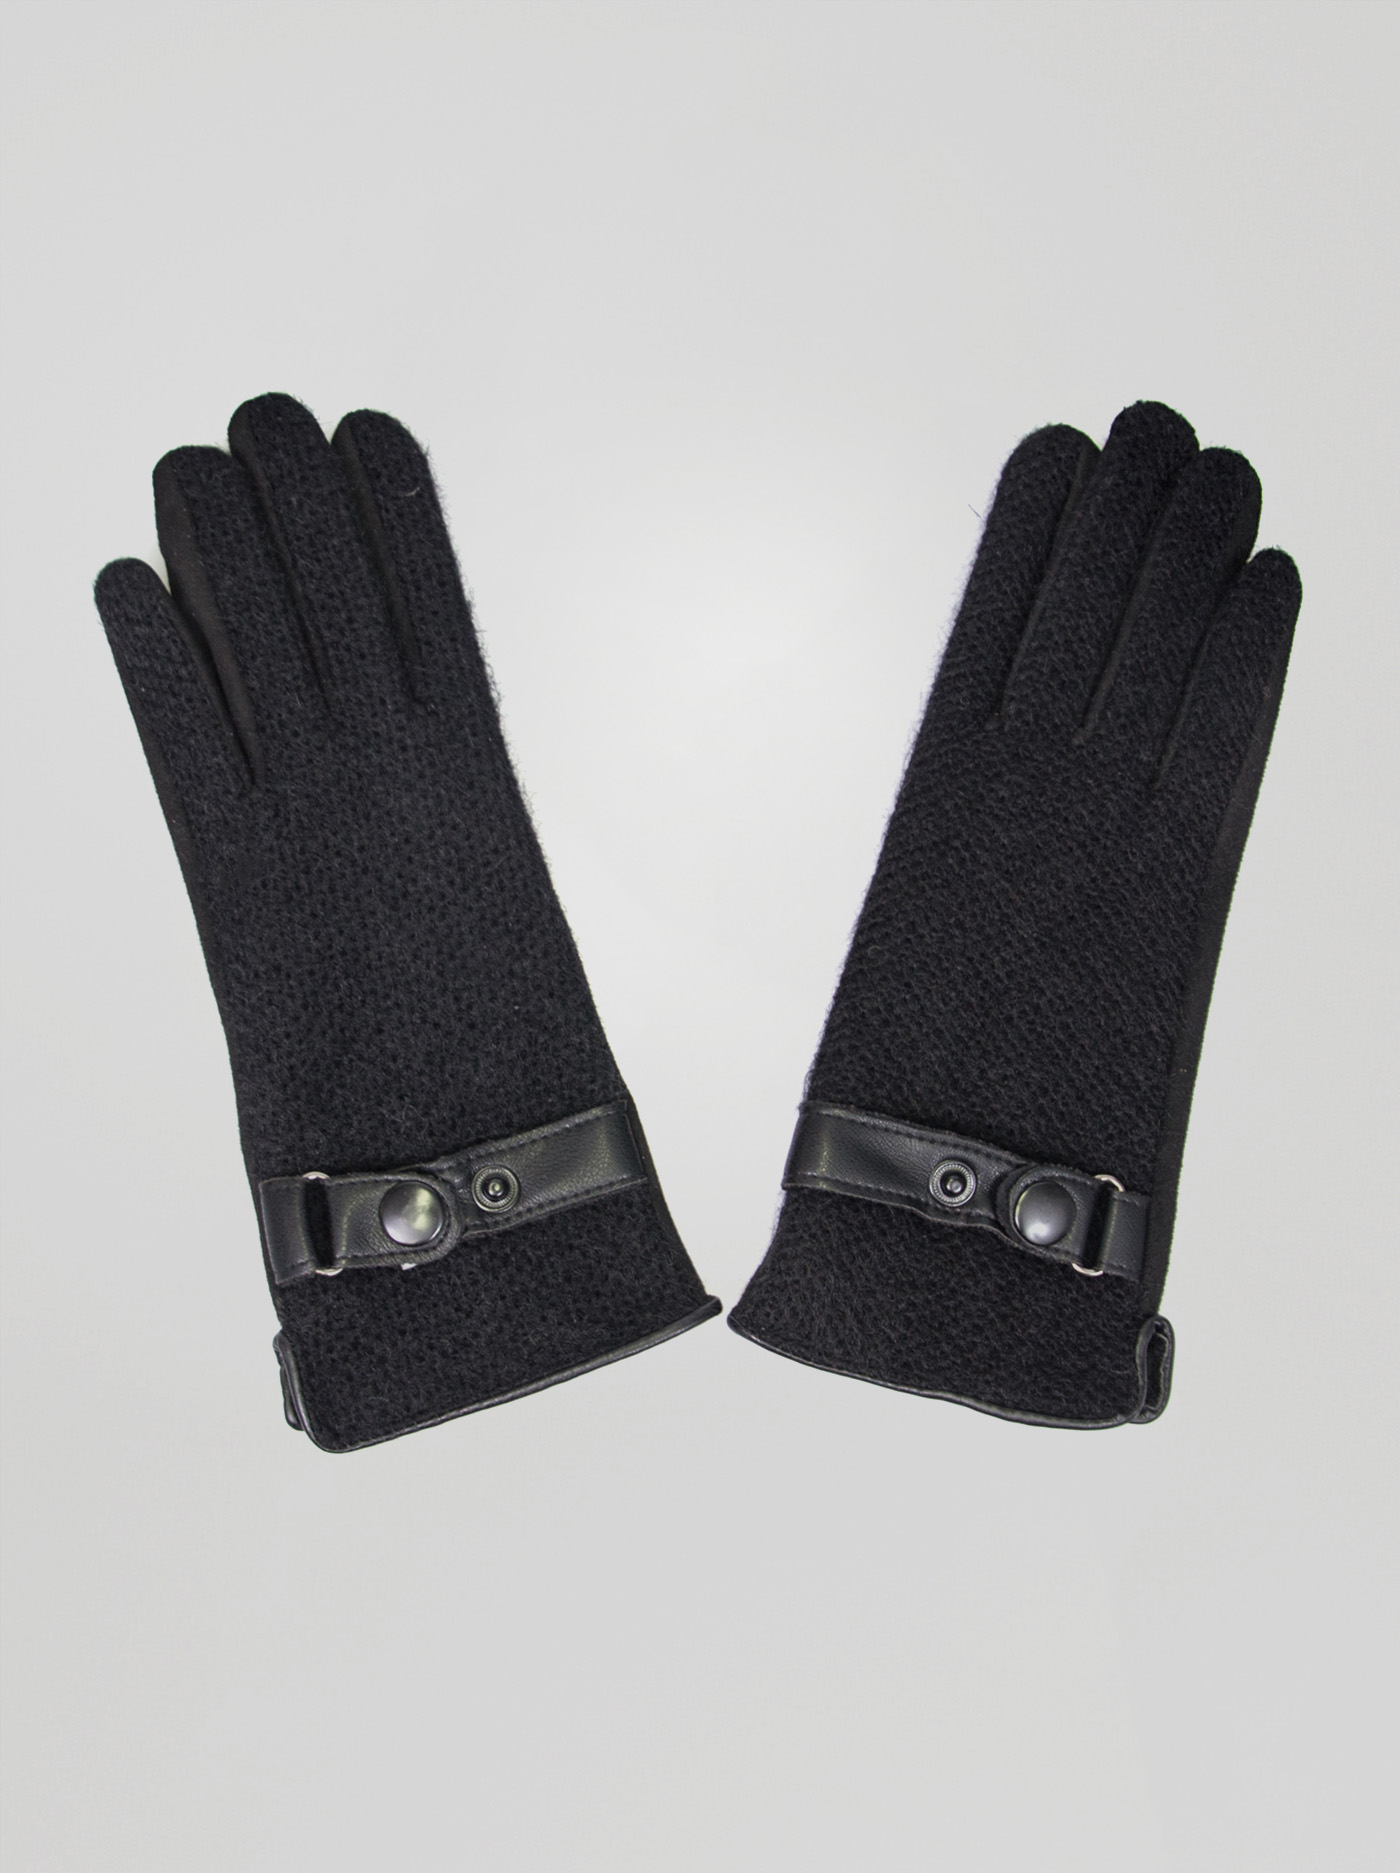 Black gloves image 1